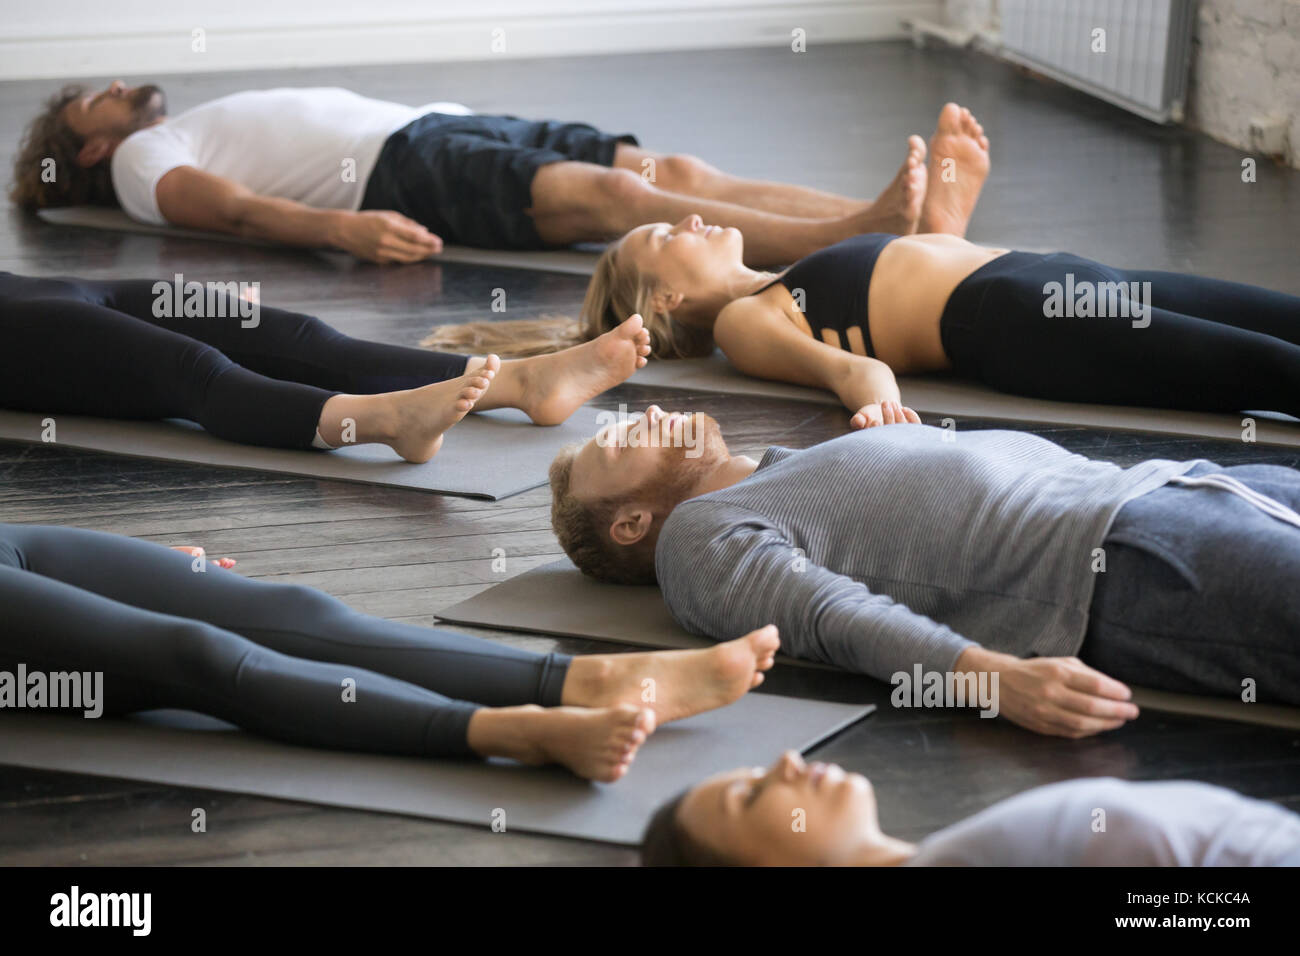 Grupo de jóvenes personas practicando yoga lección deportiva con instructor de gimnasio, acostado en el cuerpo muerto, haciendo ejercicio, savasana cadáver plantean, amigos relajante Foto de stock